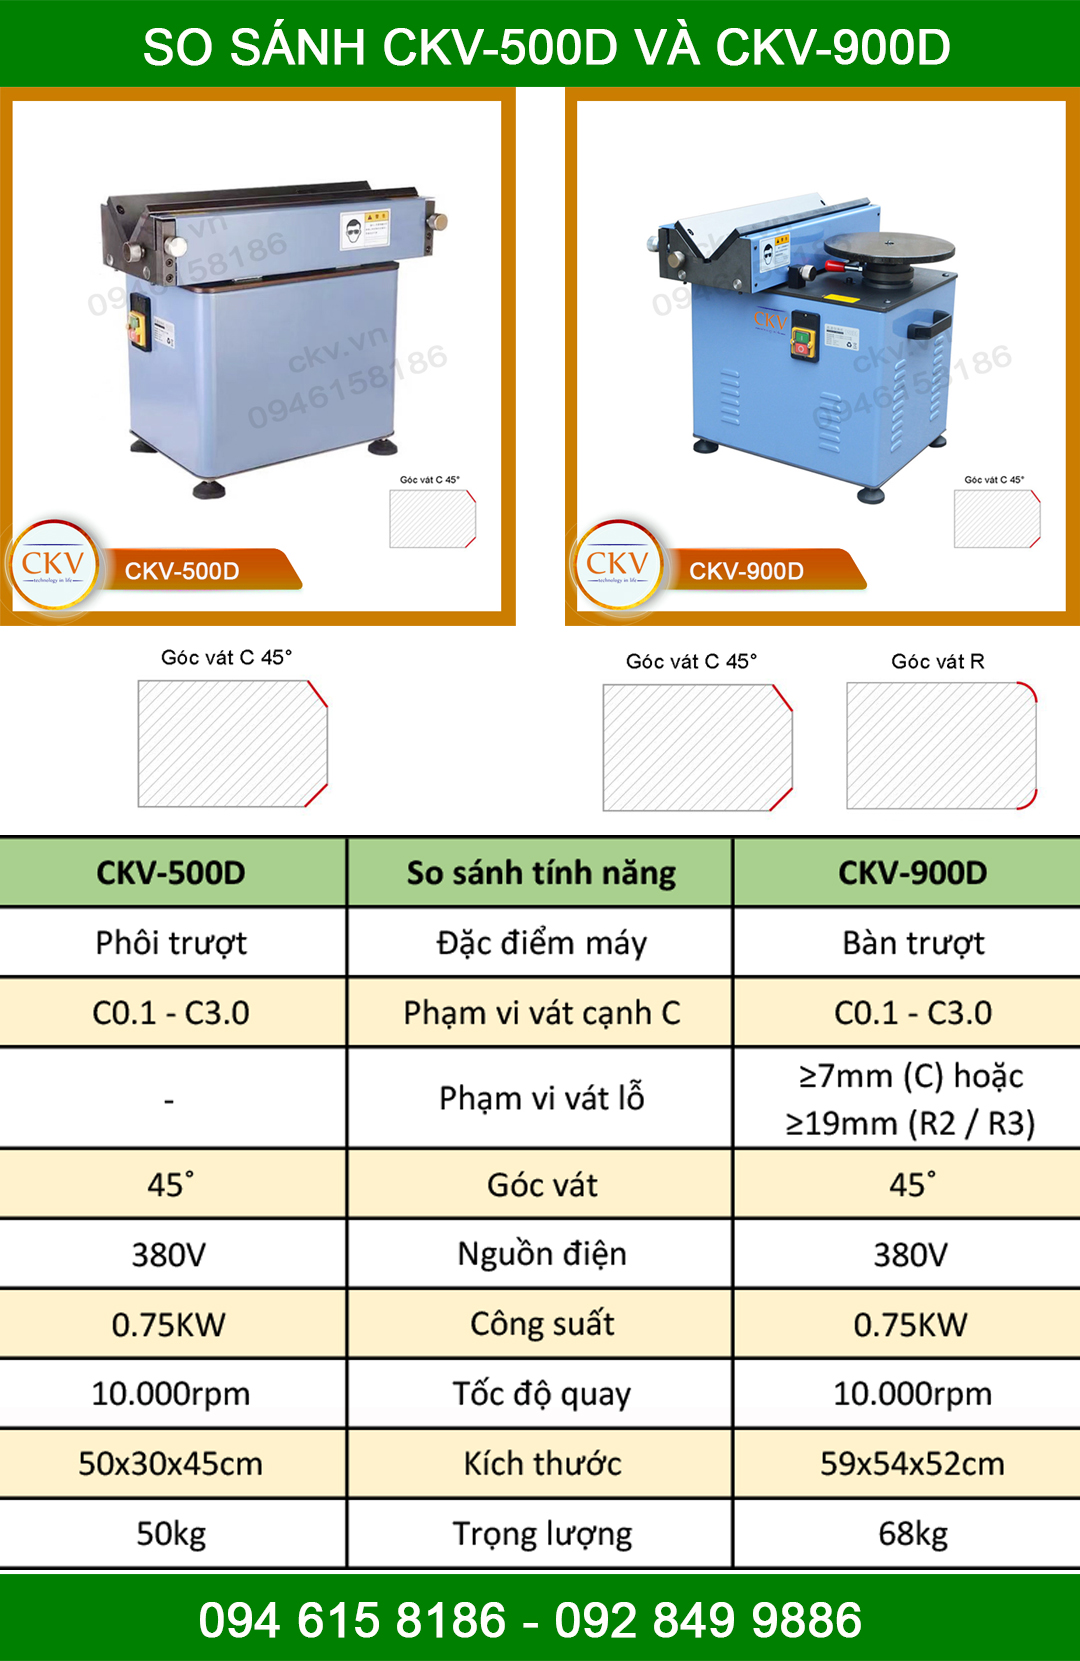 So sánh CKV-500D và CKV-900D